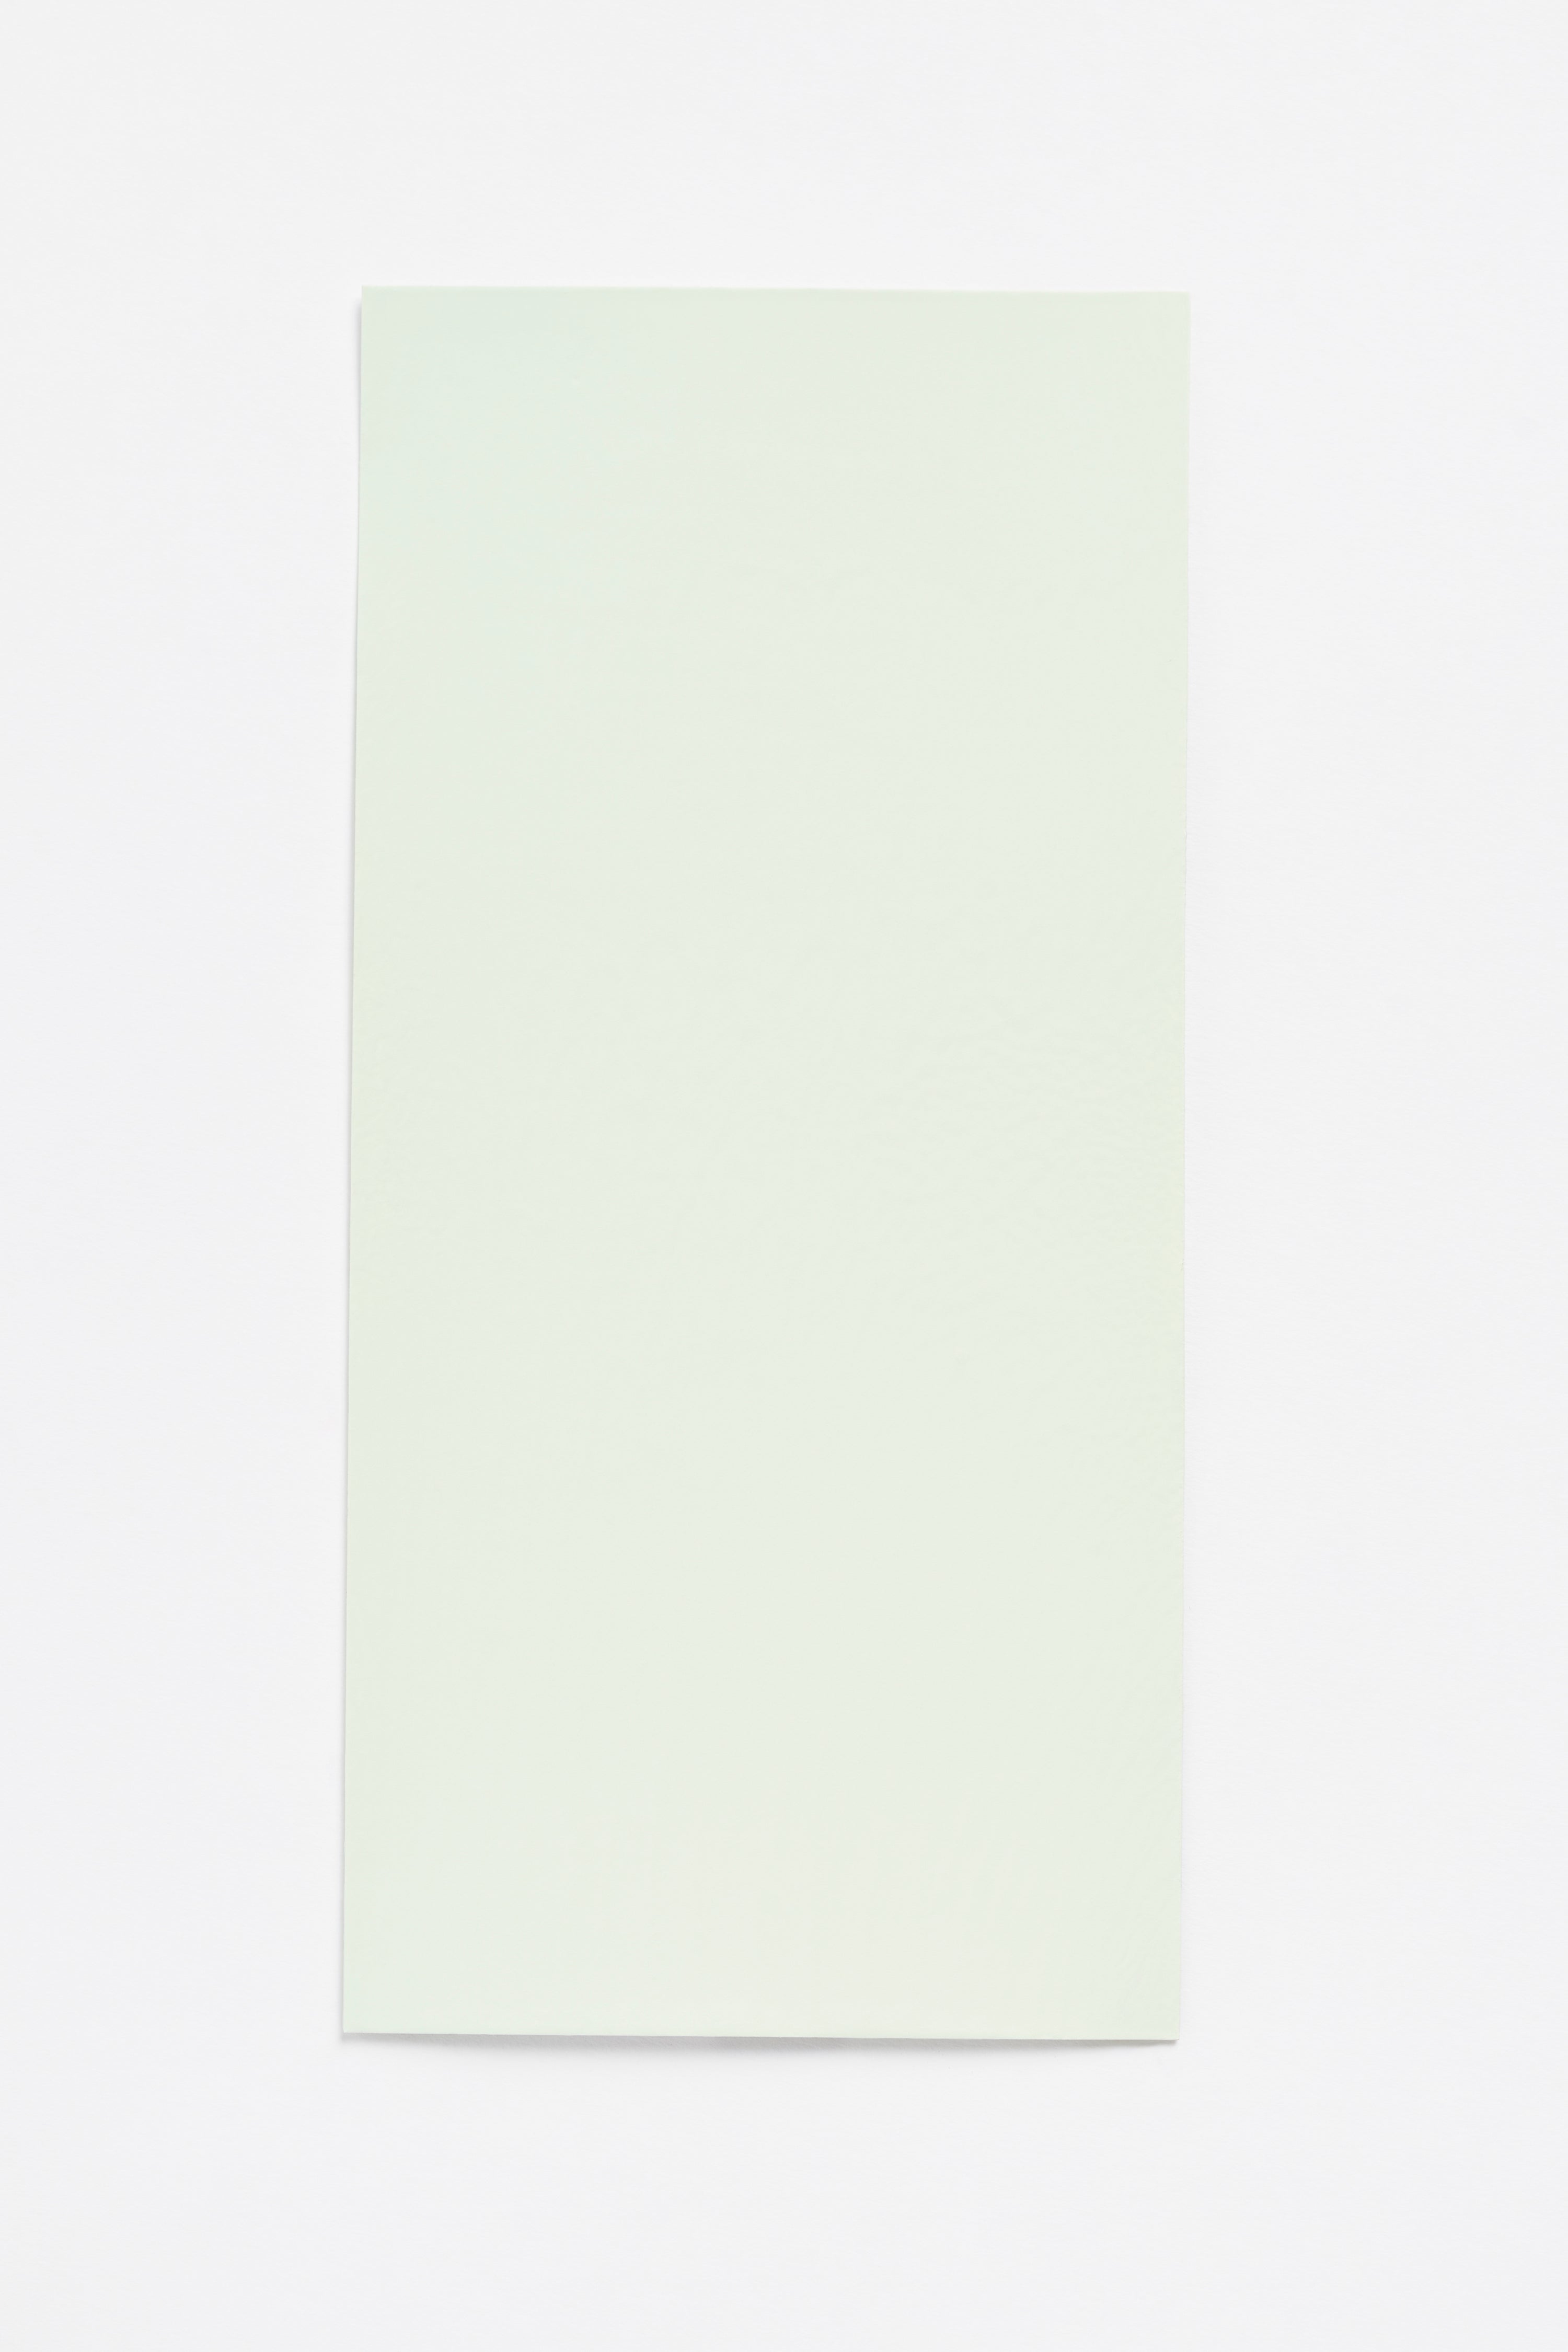 Honey Dew — a paint colour developed by Sabine Marcelis for Blēo